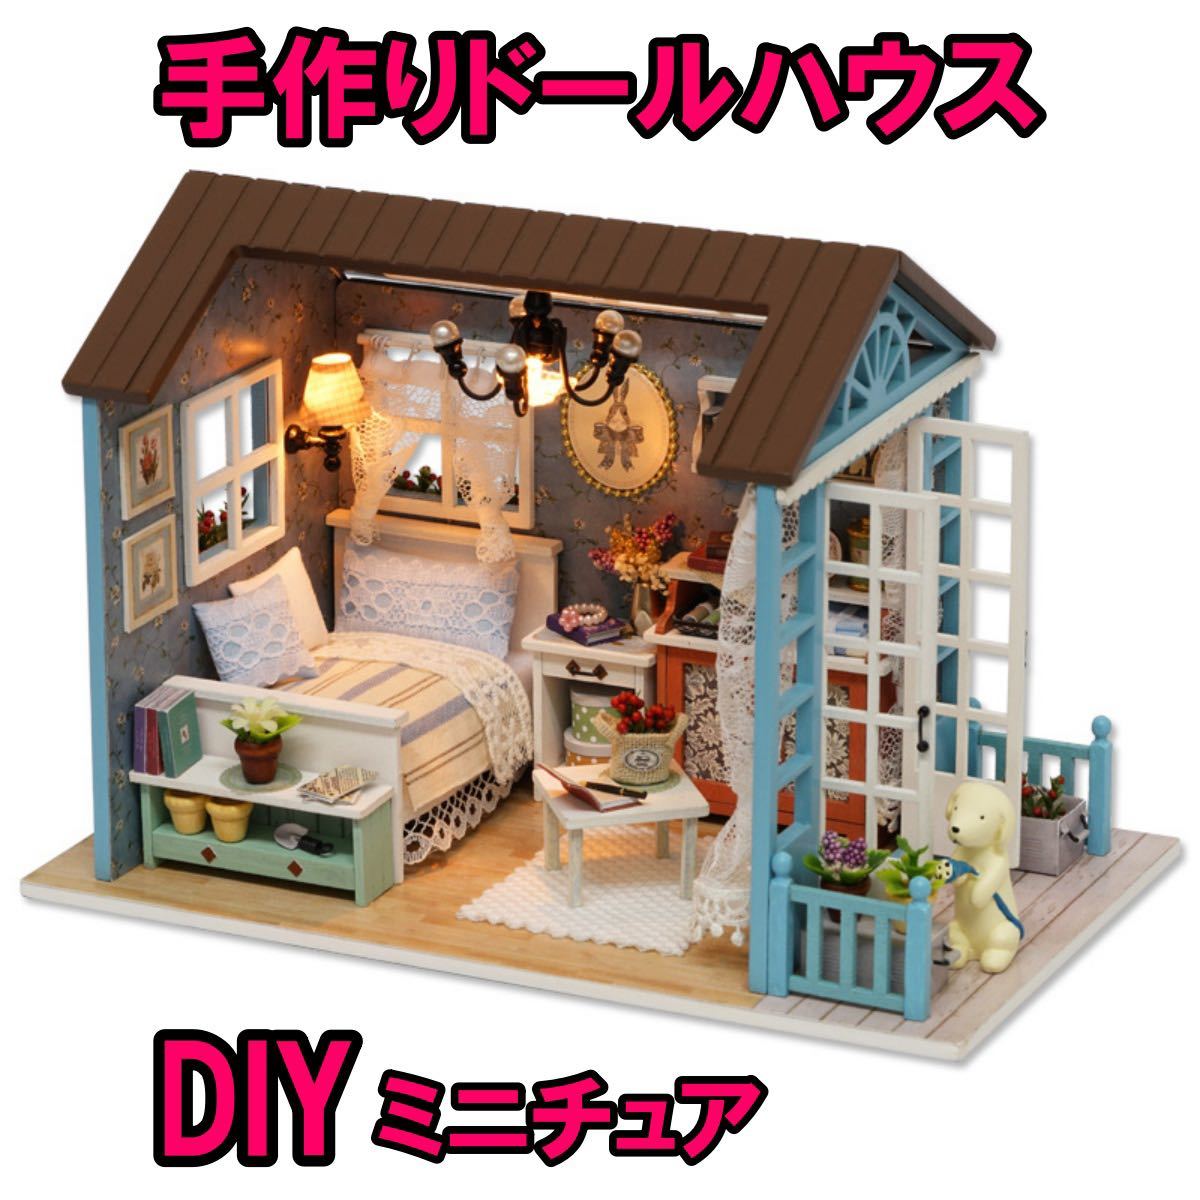  кукольный дом миниатюра ручная работа DIY конструктор комплект 